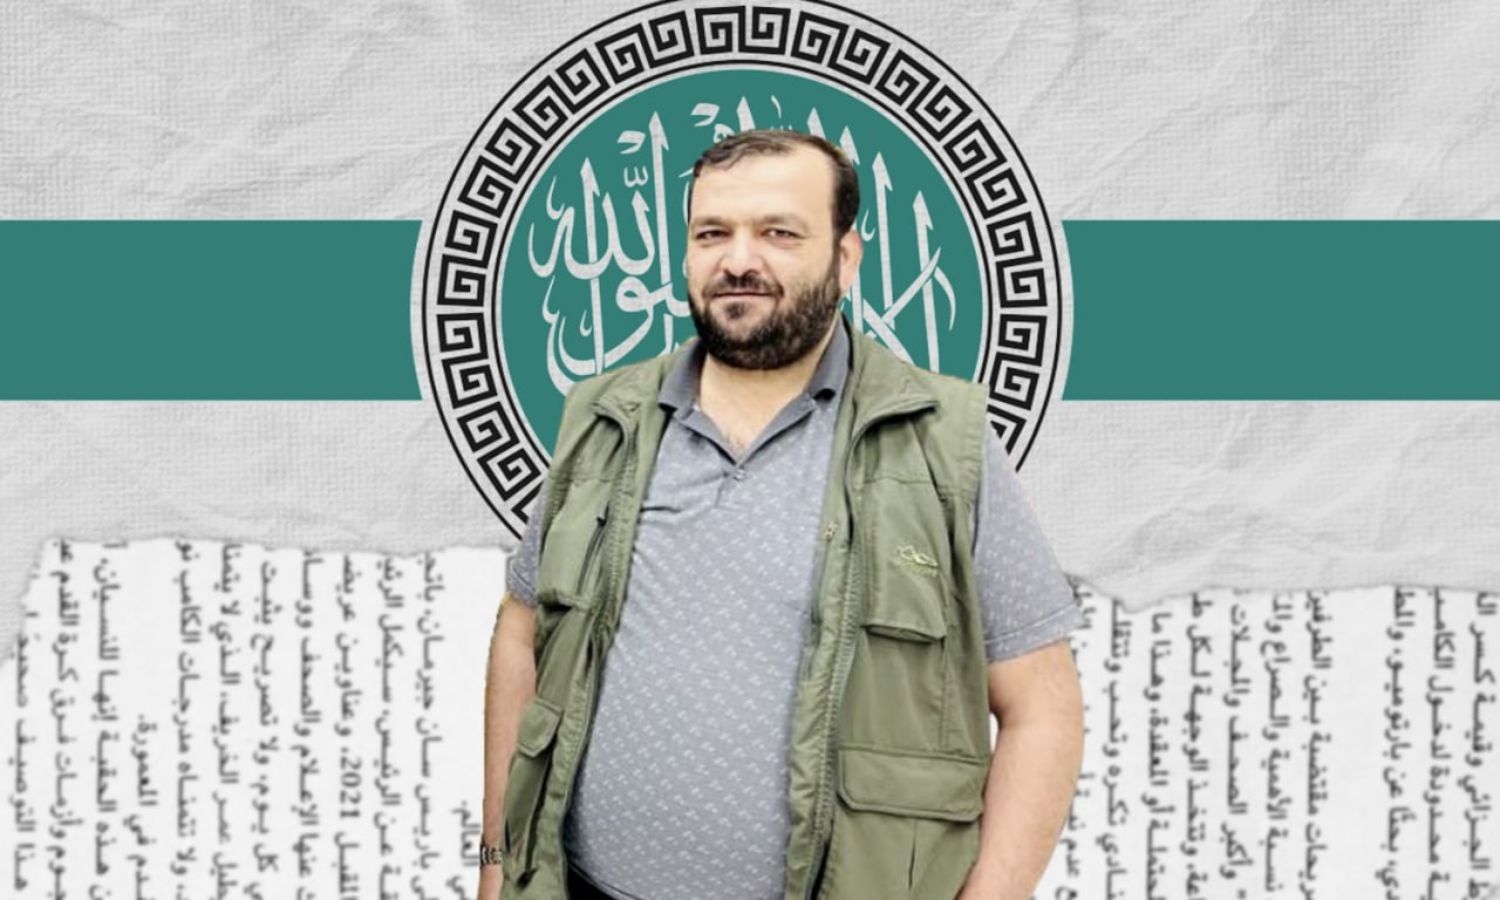 القيادي في "هيئة تحرير الشام" جهاد عيسى الشيخ المعروف بـ"أبو أحمد زكور" (تعديل عنب بلدي)